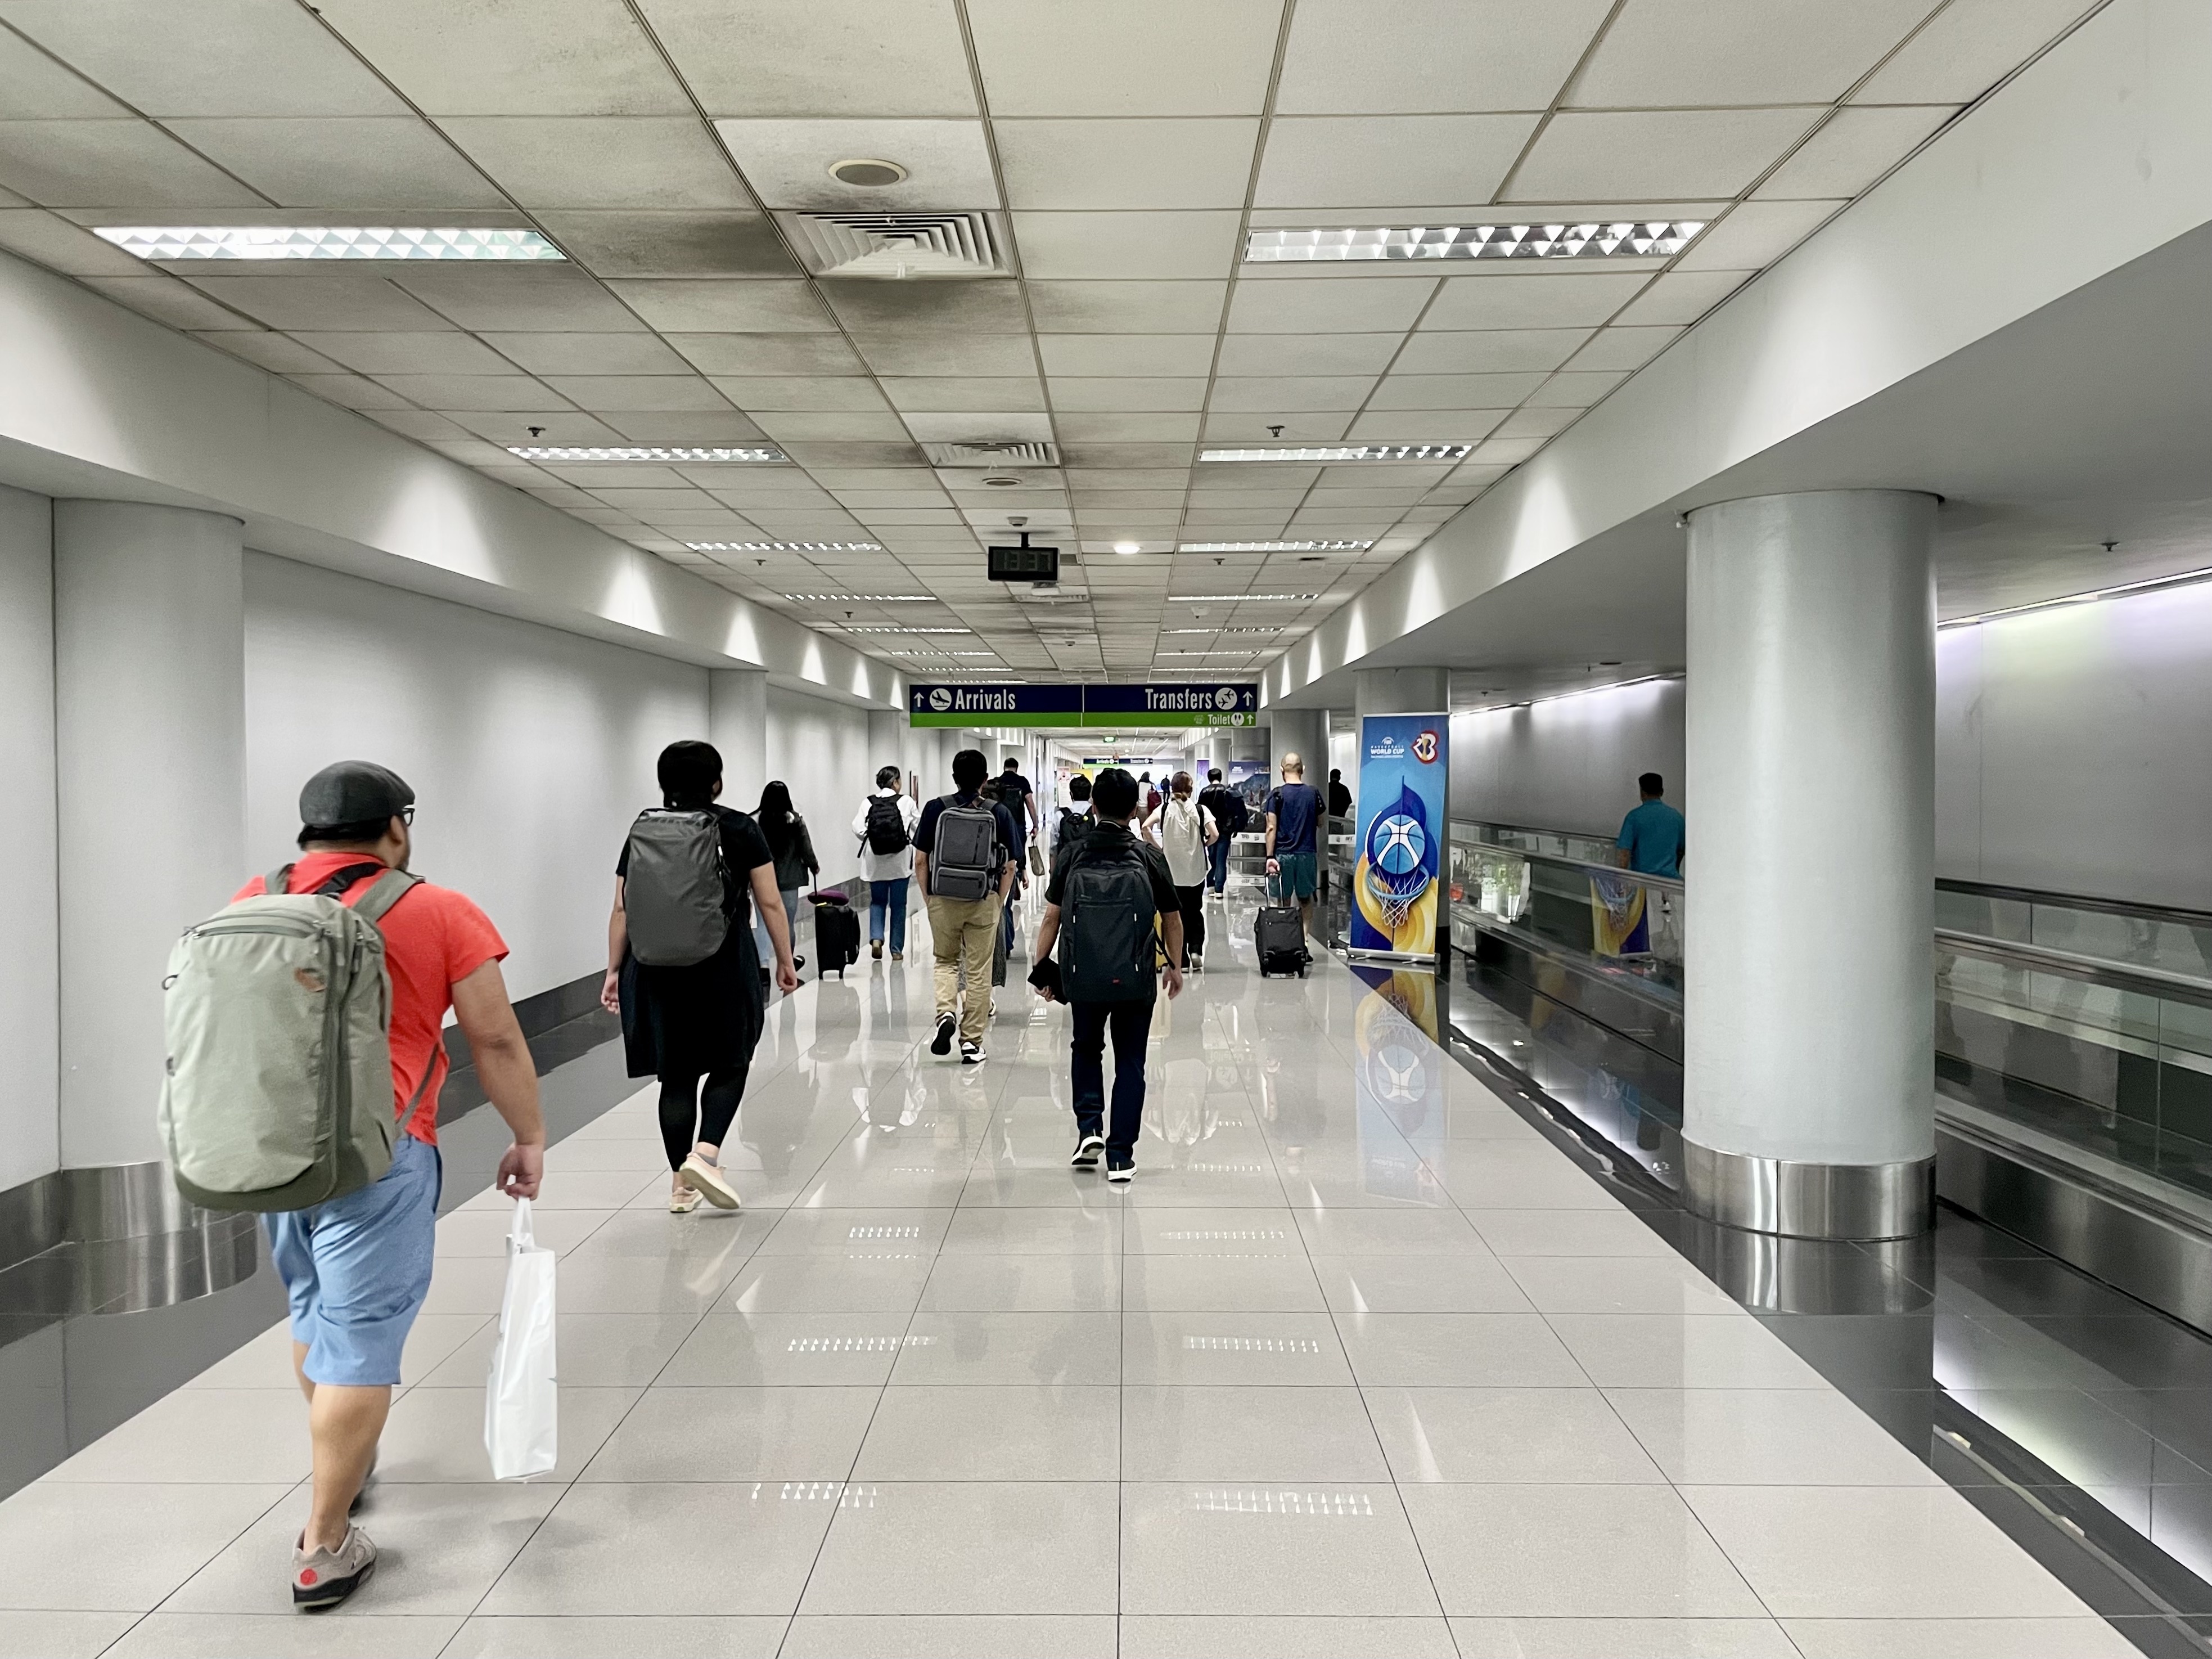 どことなく成田空港に雰囲気が似ているニノイ・アキノ国際空港。表示は濃紺とグリーンというドラッグストアのようなカラーで統一されている